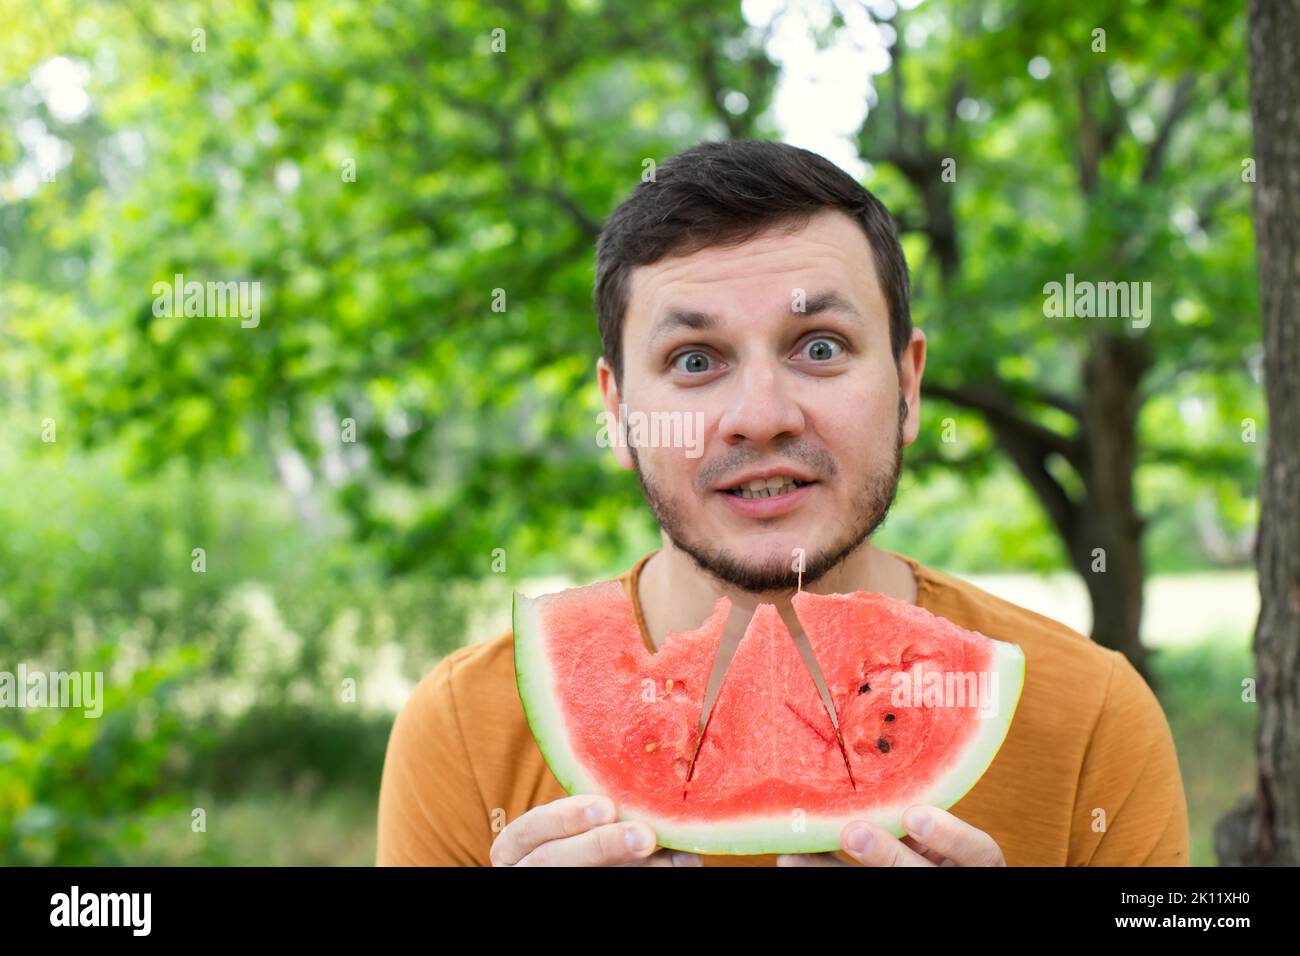 Mann, der saftige rote Wassermelone isst. Das Konzept von Sommer und köstlichem Gemüse. Vorderansicht. Stockfoto